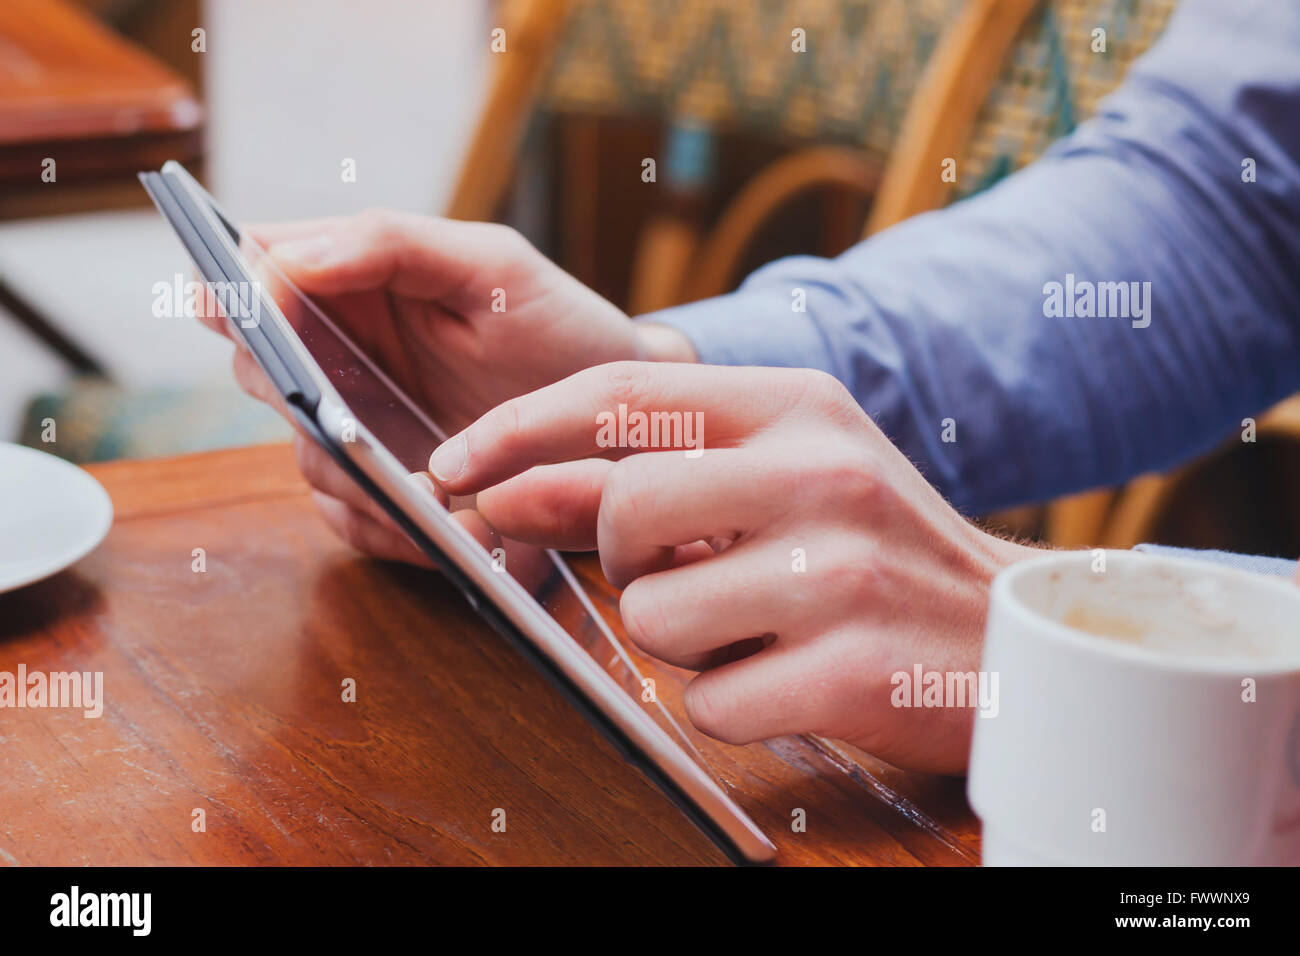 Vérification du courrier électronique sur touchpad, Close up of hands using digital tablet in cafe Banque D'Images